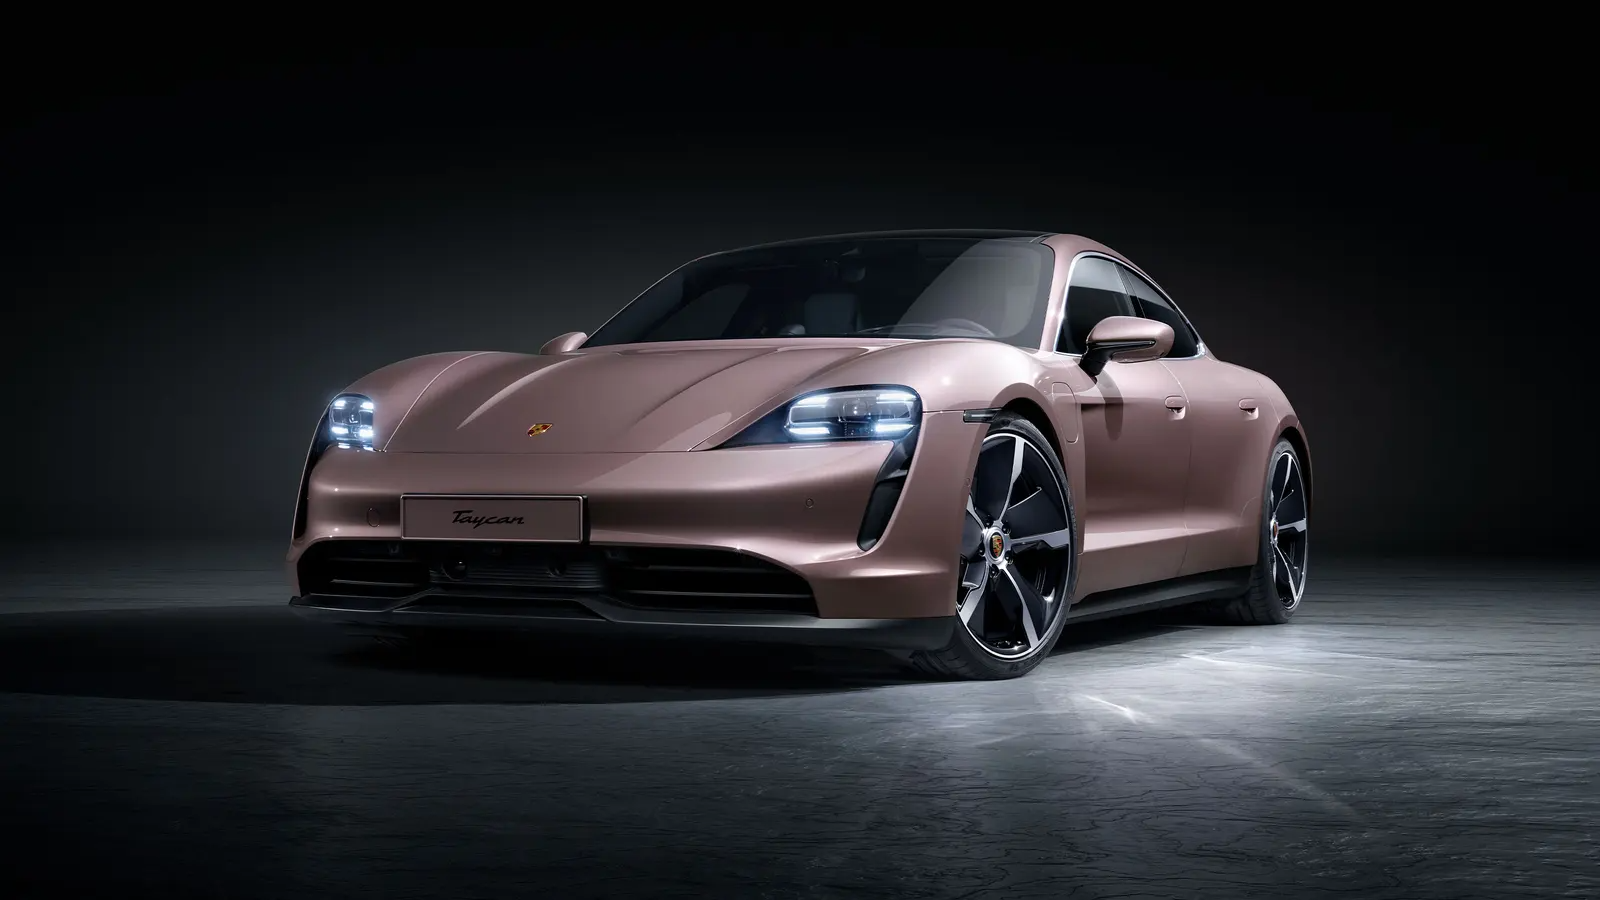 Porsche atiça tesla com promoção para seu carro elétrico 